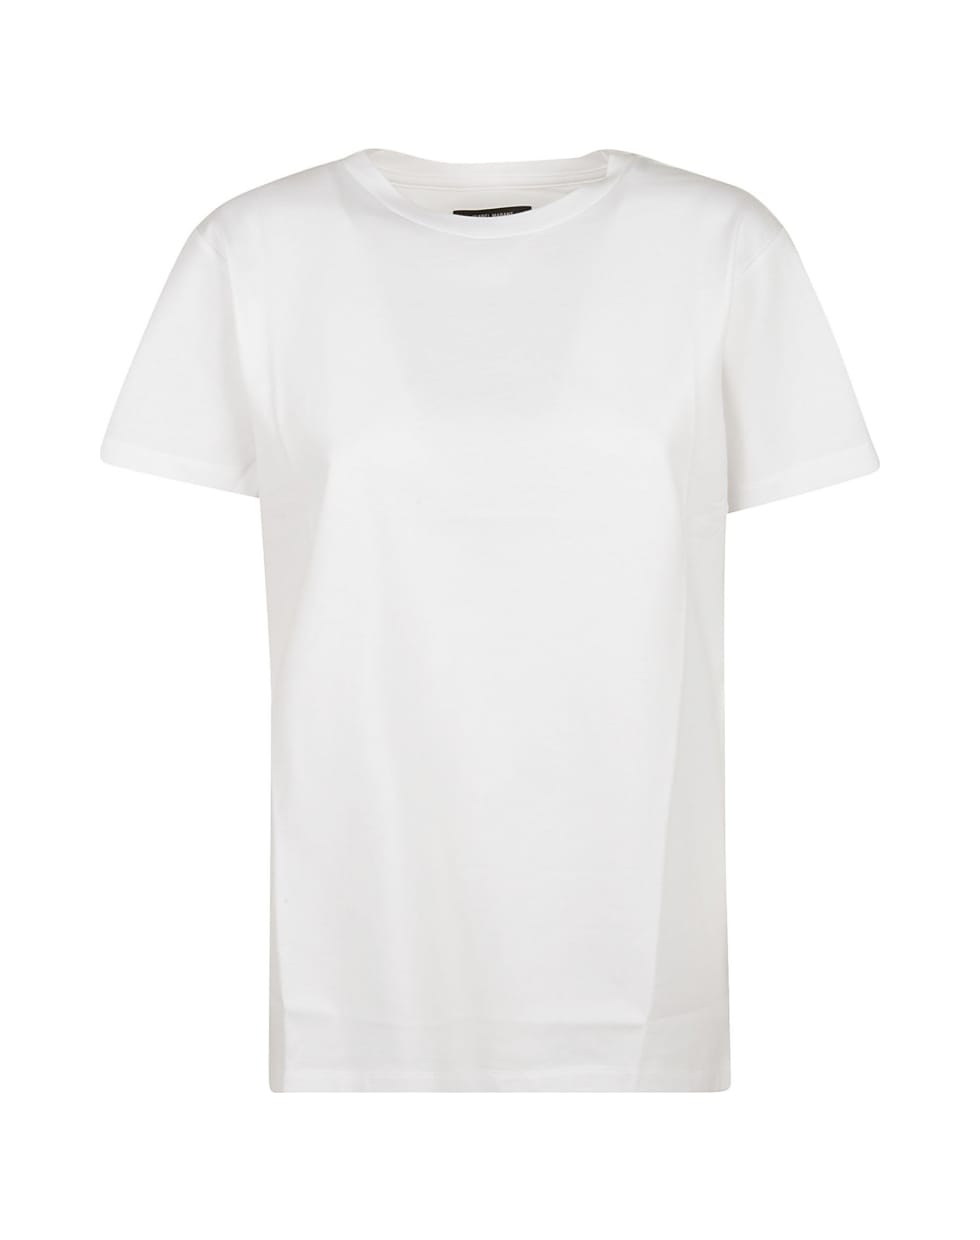 Isabel Marant Annax T-shirt - White